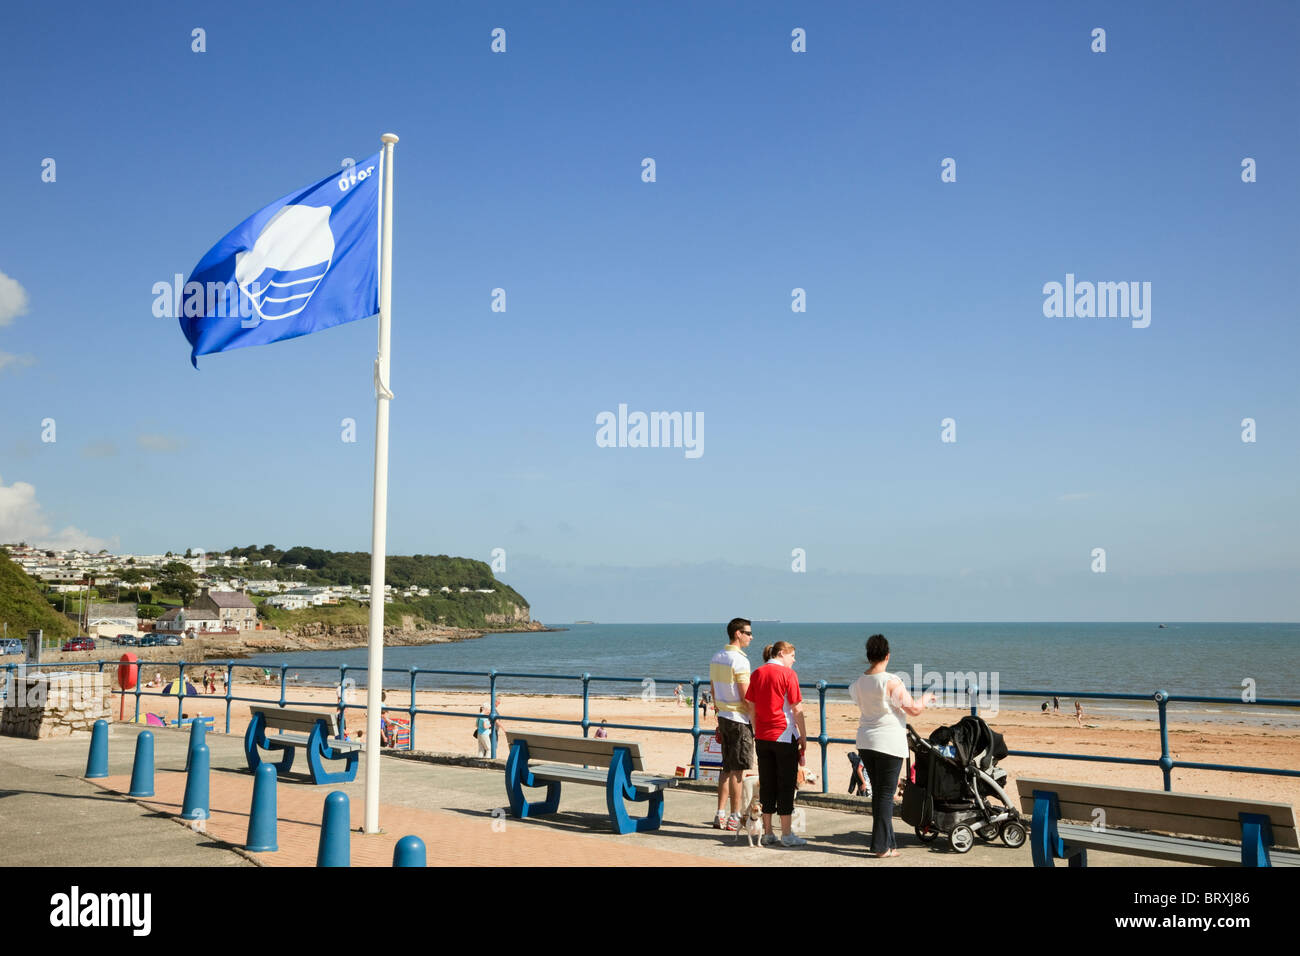 Bandiera blu sul lungomare che si affaccia sulla spiaggia di Welsh località balneare di Benllech, Isola di Anglesey, Galles del Nord, Regno Unito, Gran Bretagna Foto Stock